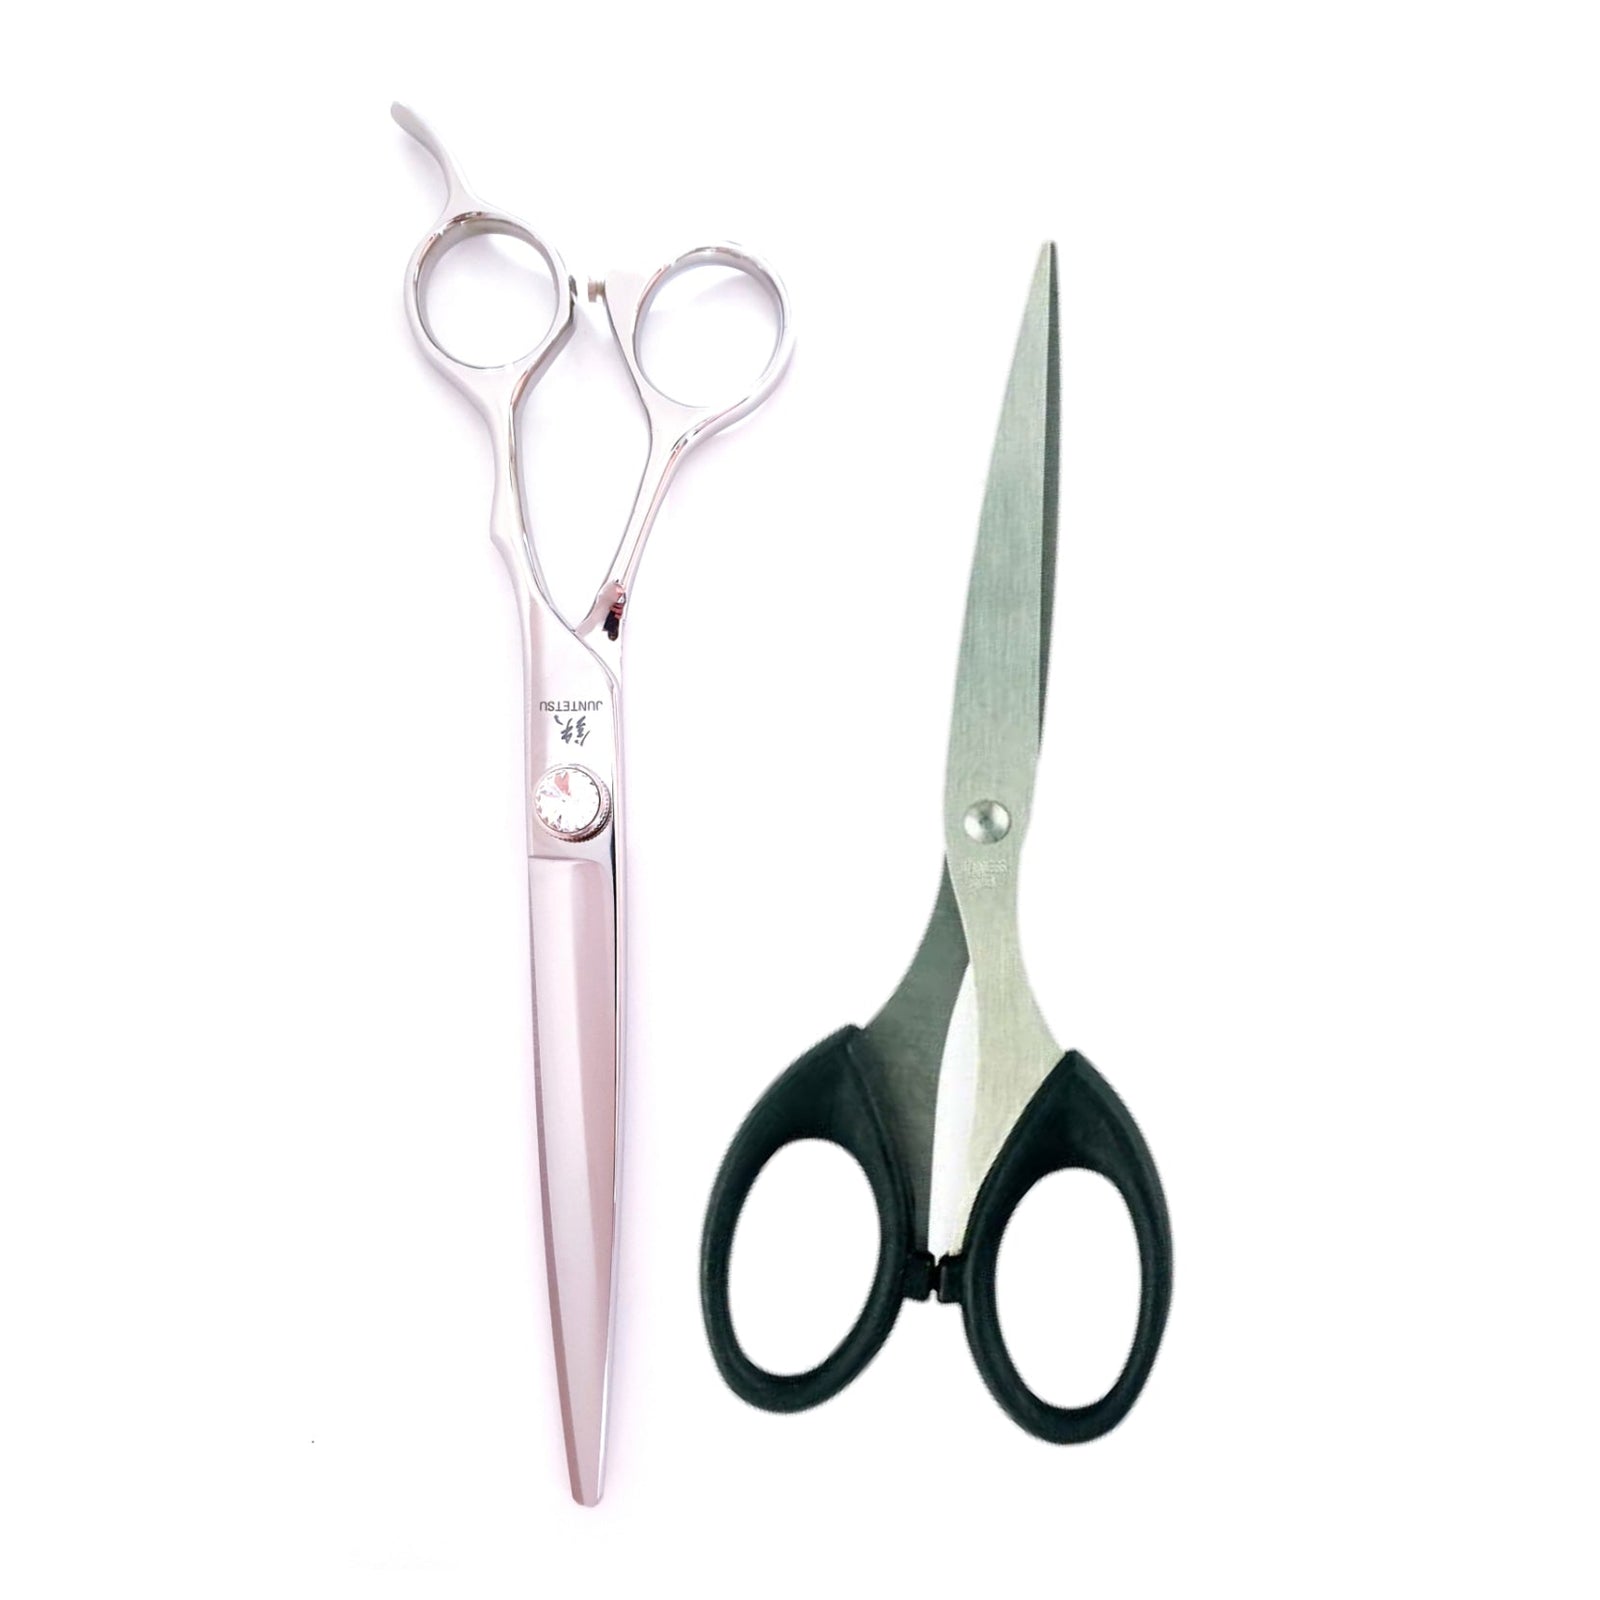 https://www.jpscissors.com/cdn/shop/articles/the-difference-between-hair-cutting-scissors-vs-regular-scissors-501280_1600x.jpg?v=1663030532